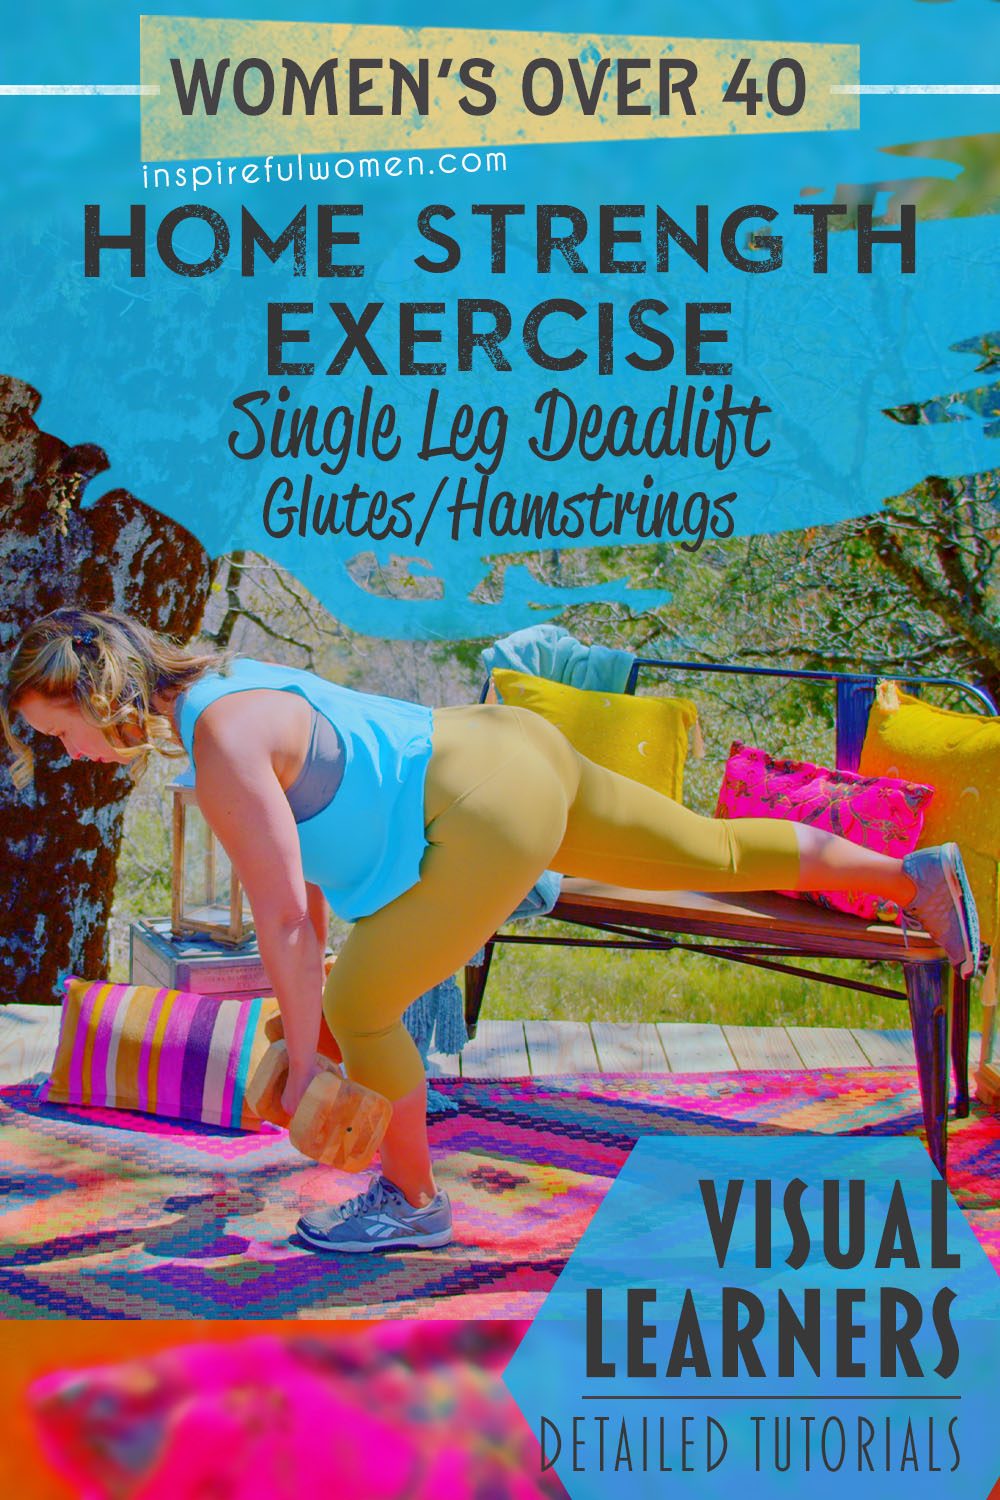 one-leg-deadlift-alternative-dumbbell-glute-medius-hamstrings-lower-body-exercise-women-40-plus